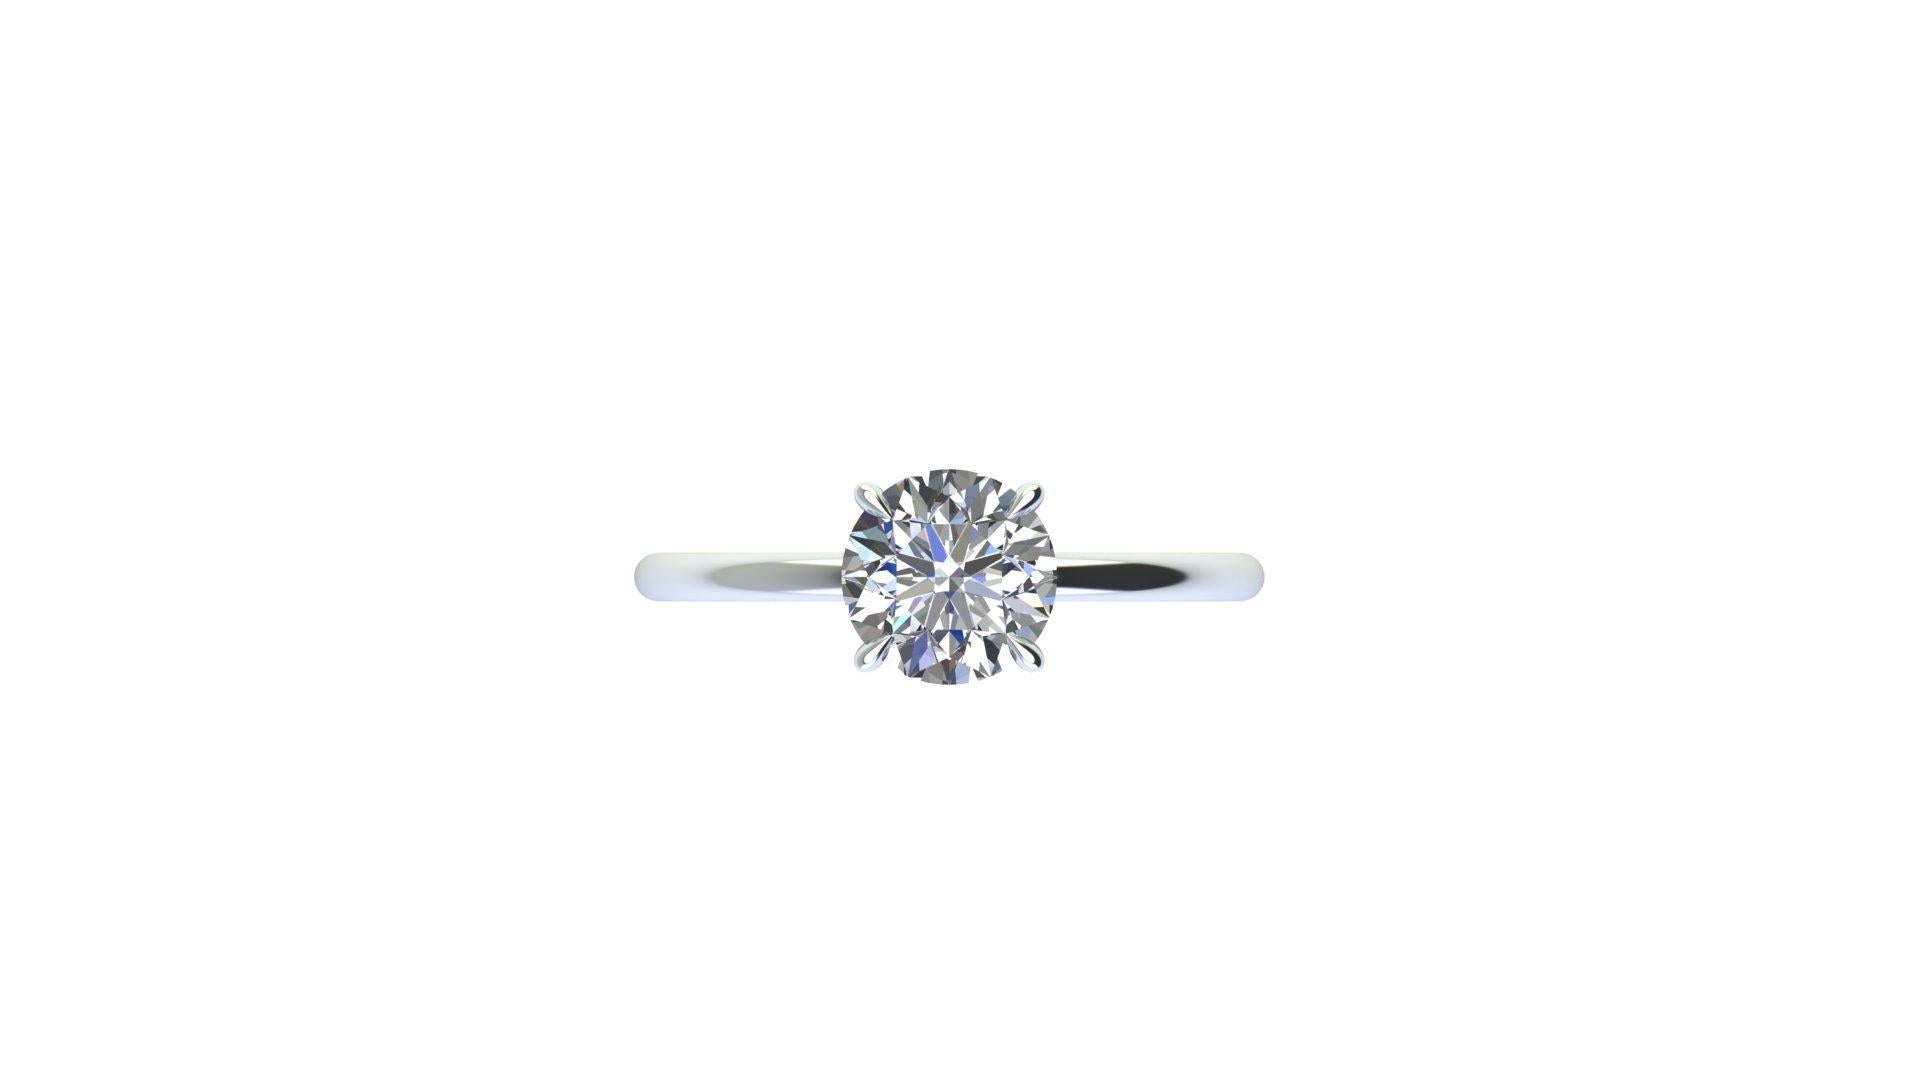 Diamant rond certifié par le GIA, de couleur G, de pureté VS2 et de triple éclat, dans une monture minimaliste, fine et basse, à quatre griffes et à tige arrondie.

Cette bague est une taille standard 6 et un changement de taille de doigt gratuit